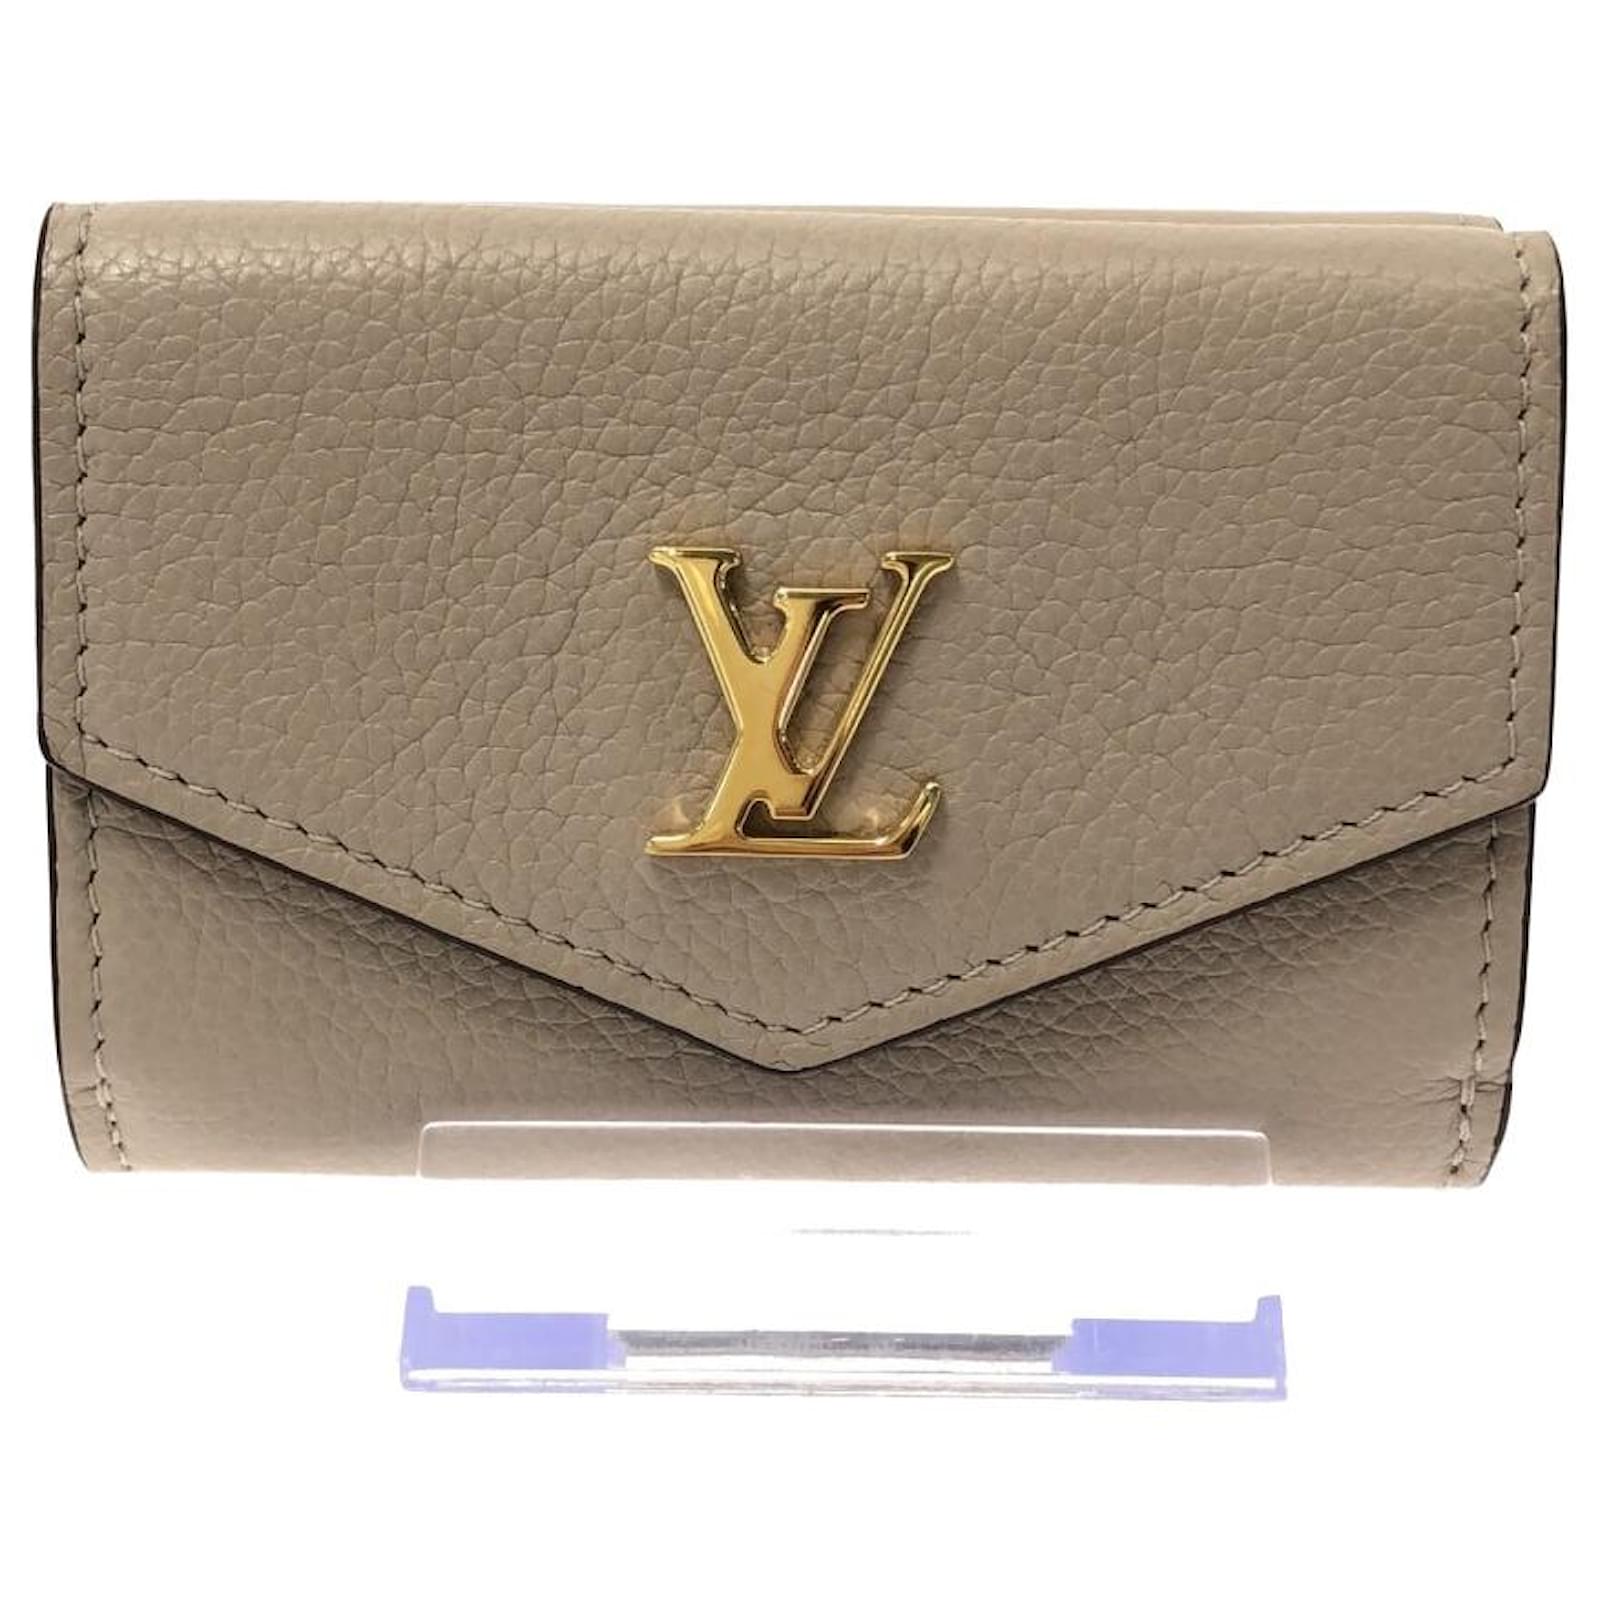 LV Lock mini wallet